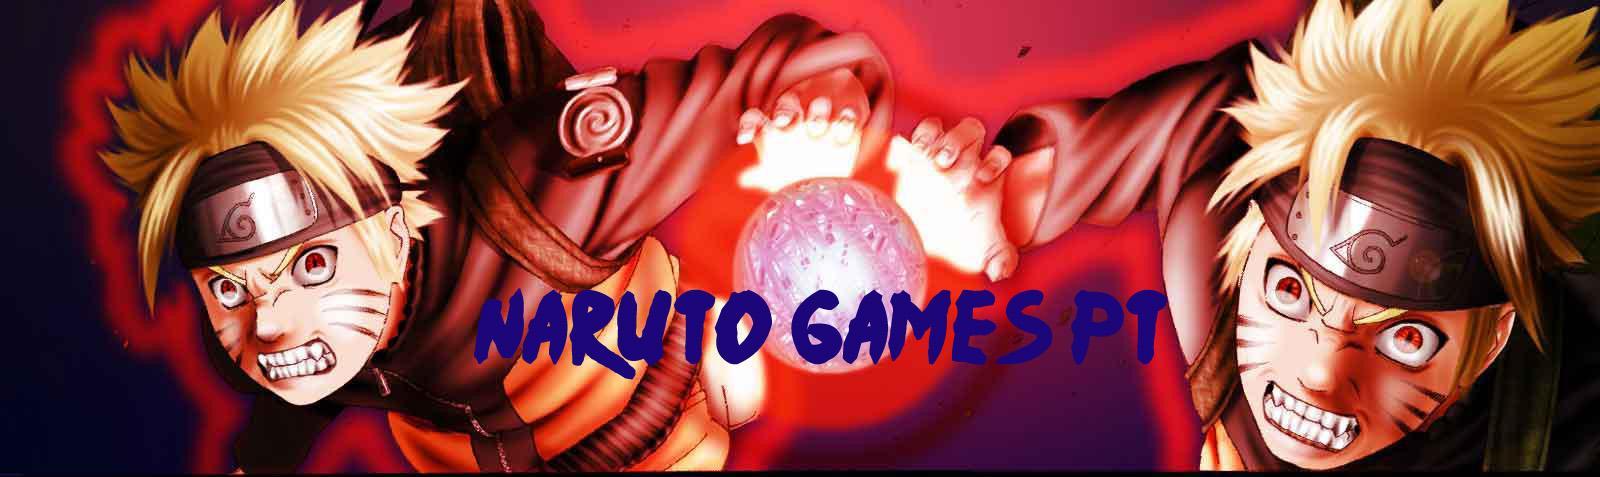 Naruto Games PT - NNJ - Matches Internacionais